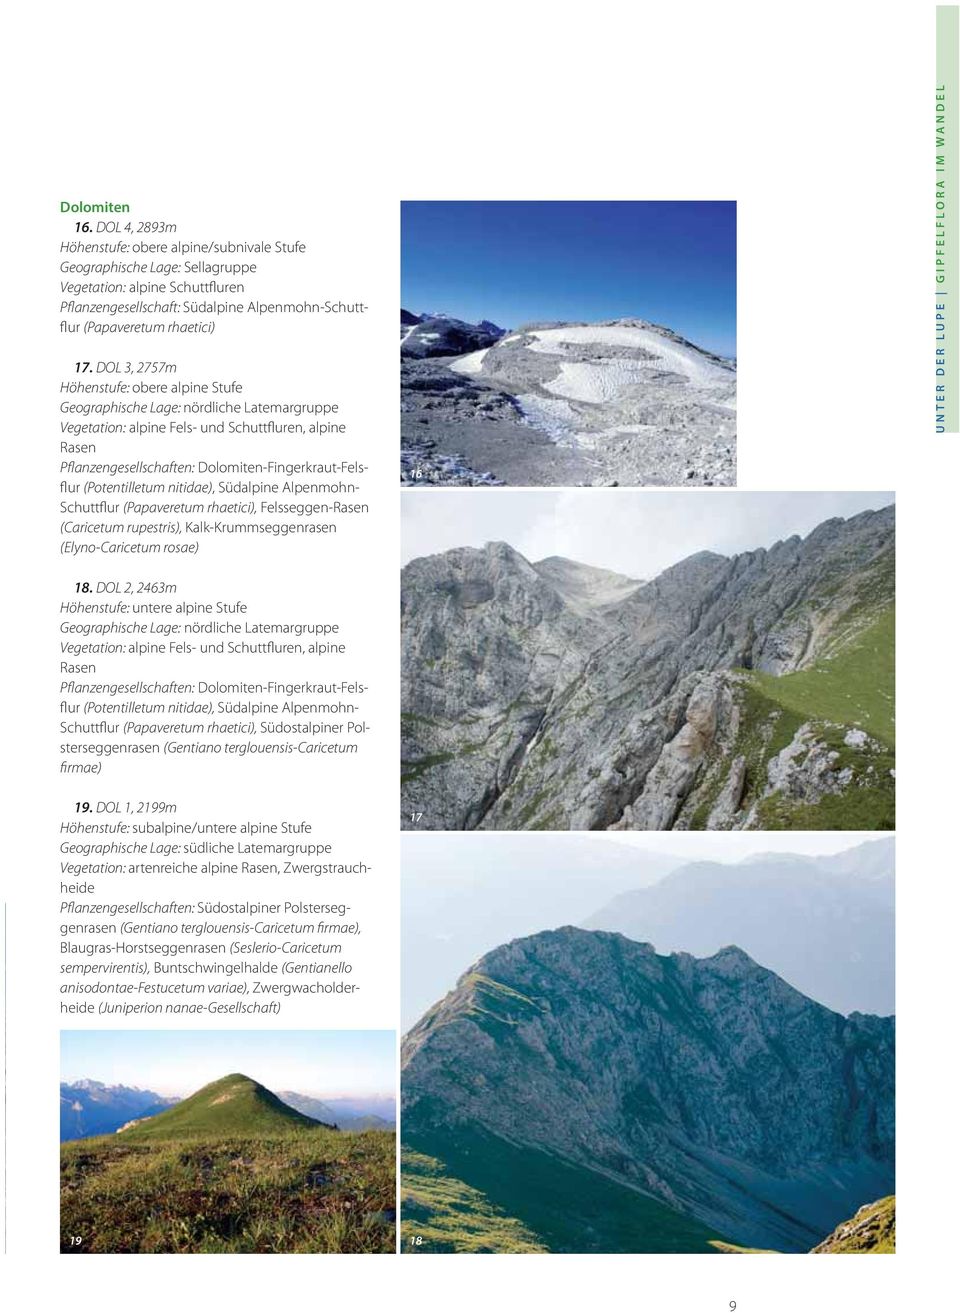 DOL 3, 2757m Höhenstufe: obere alpine Stufe Geographische Lage: nördliche Latemargruppe Vegetation: alpine Fels- und Schuttfluren, alpine Rasen Pflanzengesellschaften: Dolomiten-Fingerkraut-Felsflur